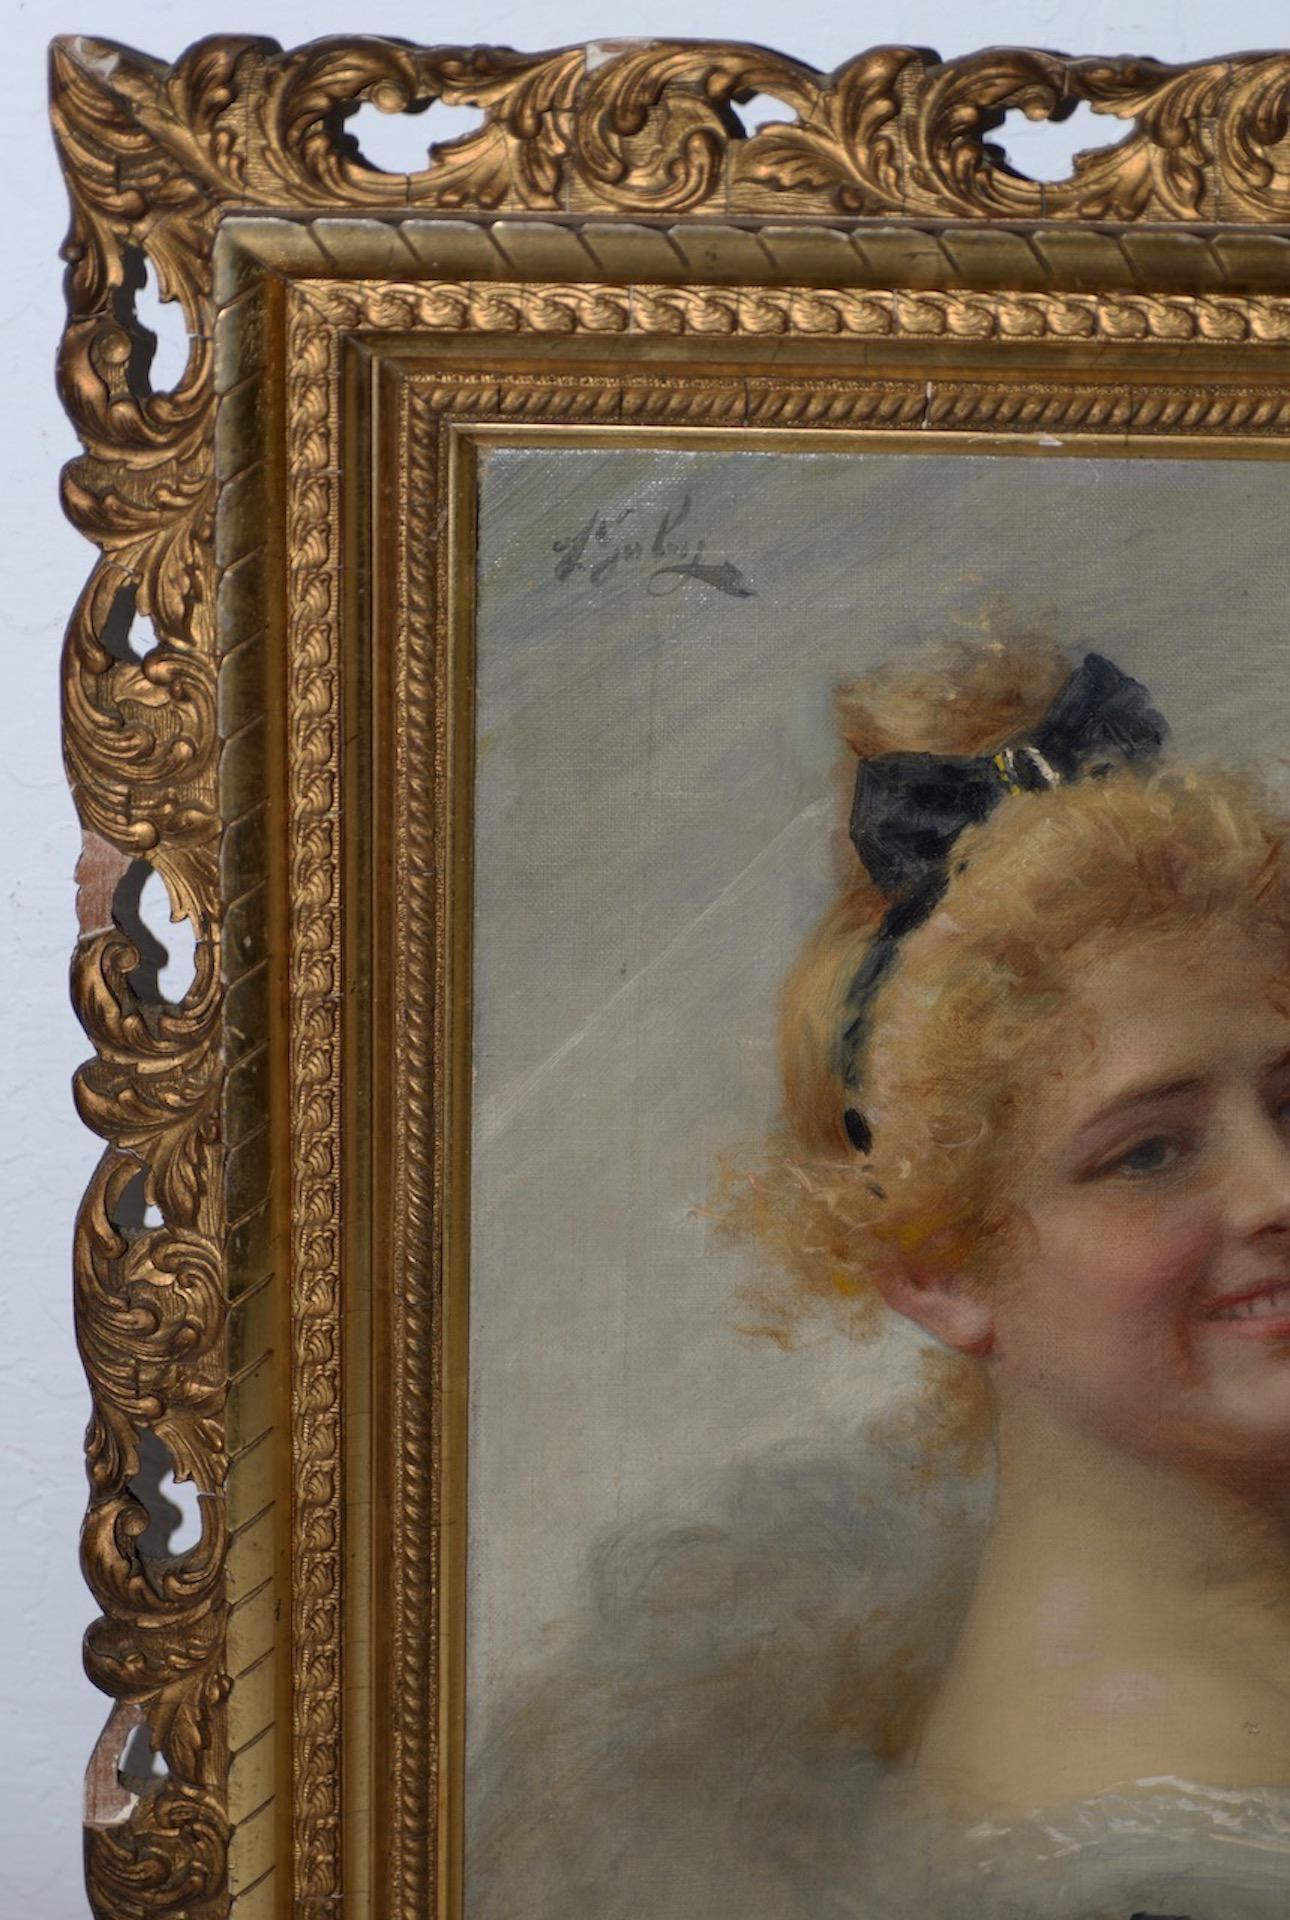 Adriano Goby Portrait à l'huile du 19e siècle d'une belle jeune femme, vers 1890

Superbe portrait à l'huile ancien, peut-être français. Le tableau est signé dans le coin supérieur gauche (voir photos).

La jeune femme semble pouvoir être une